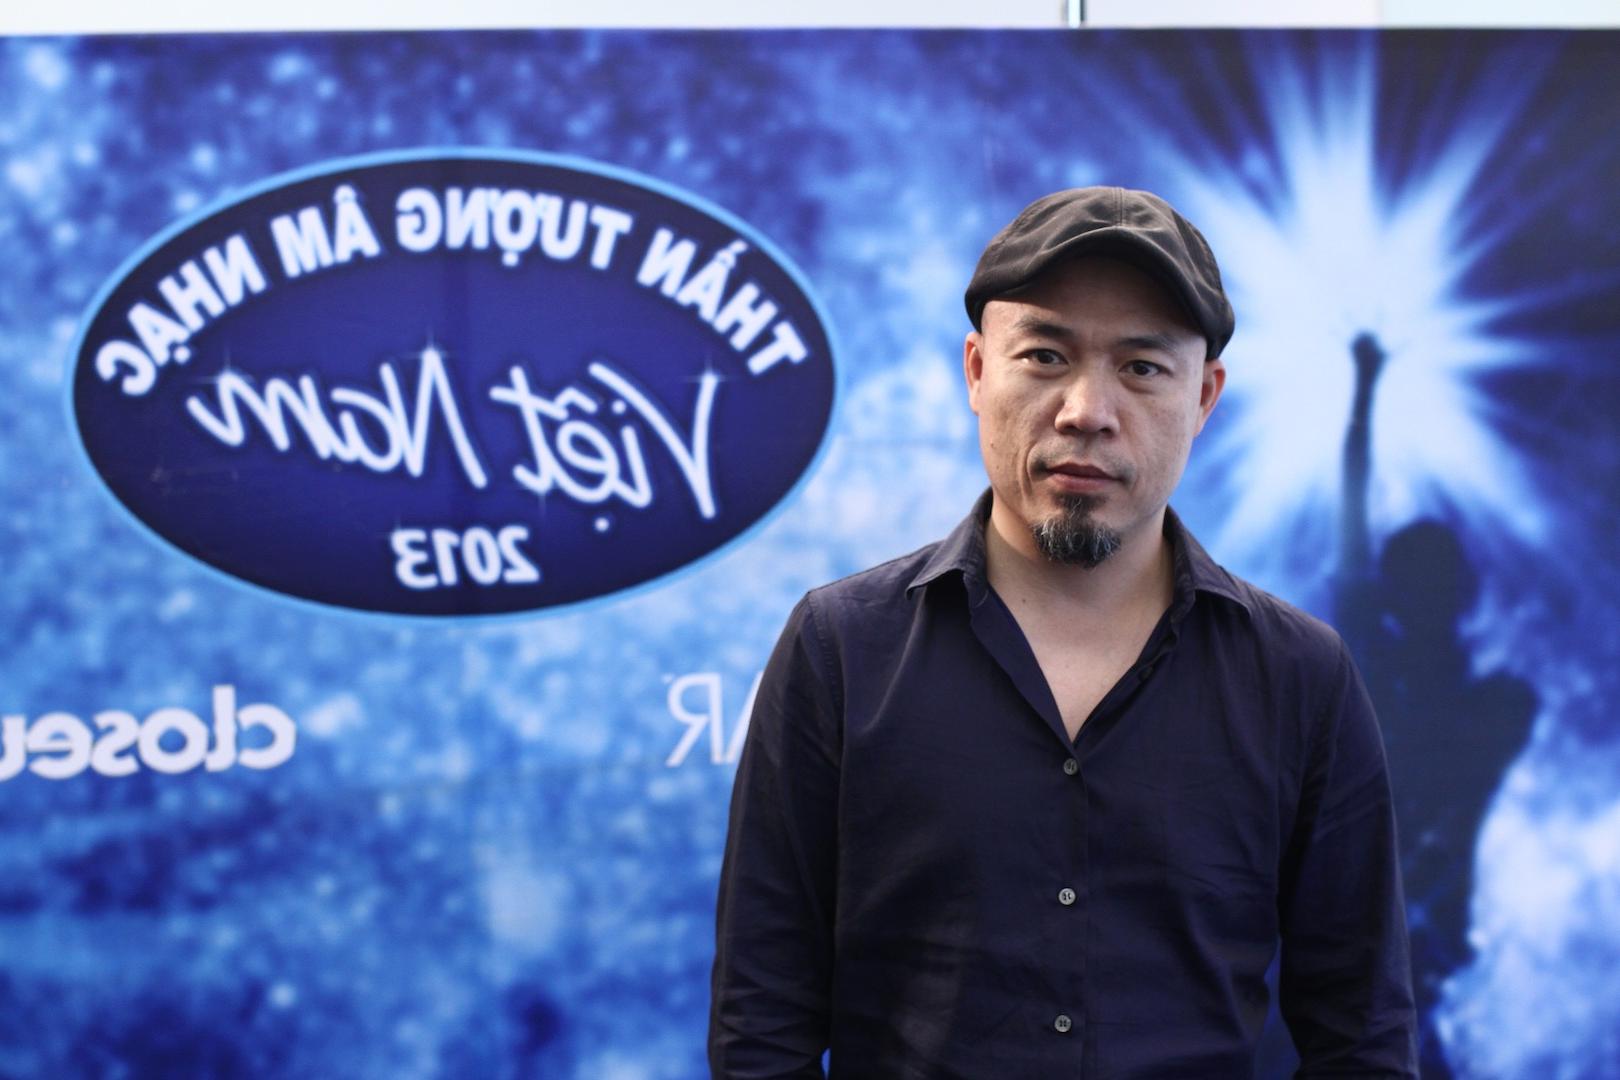 Nhạc sĩ Huy Tuấn trong vai trò ban giám khảo chương trình Việt Nam Idol năm 2013